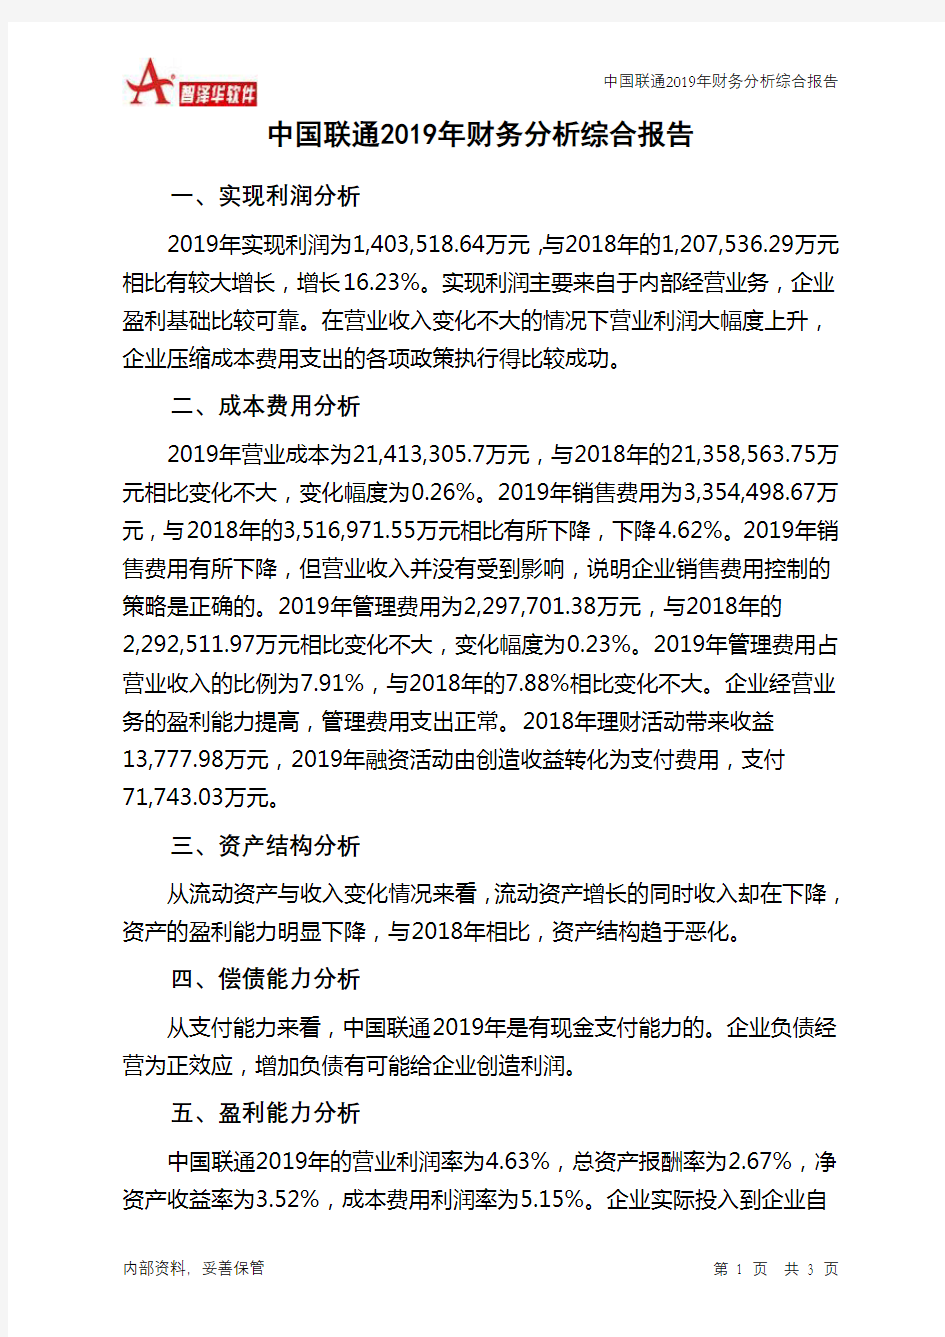 中国联通2019年财务分析结论报告